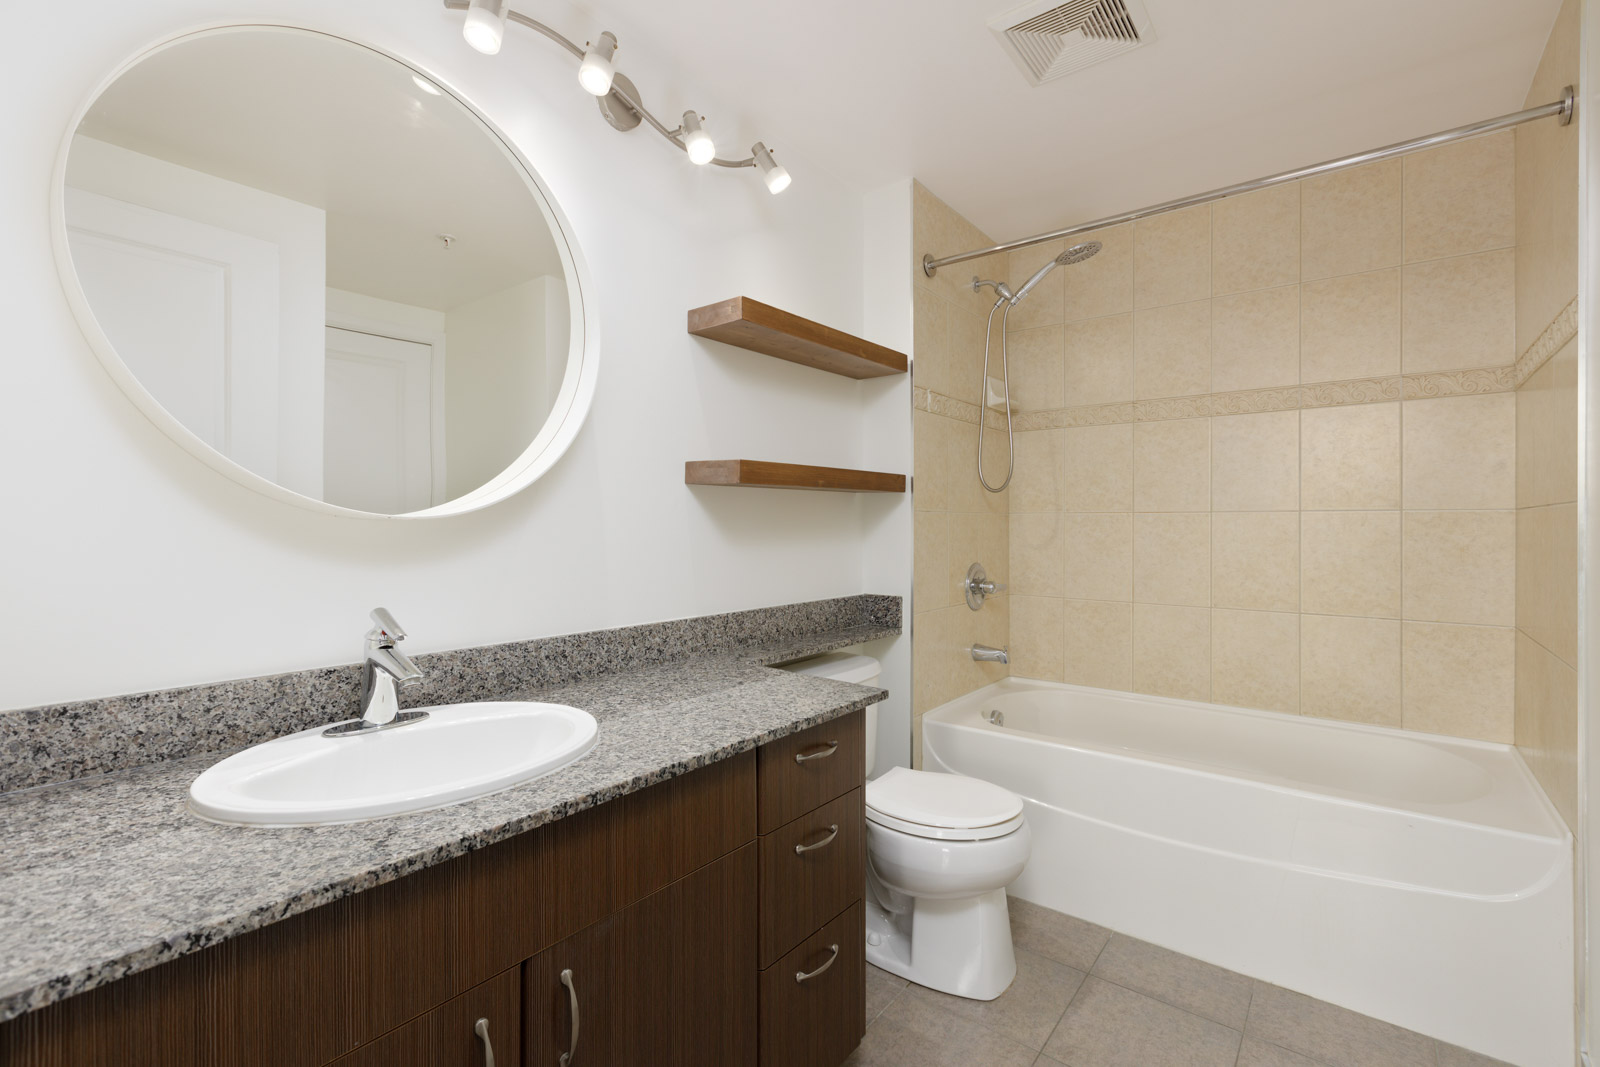 washroom with round mirror, dark cabinets, tiled shower area